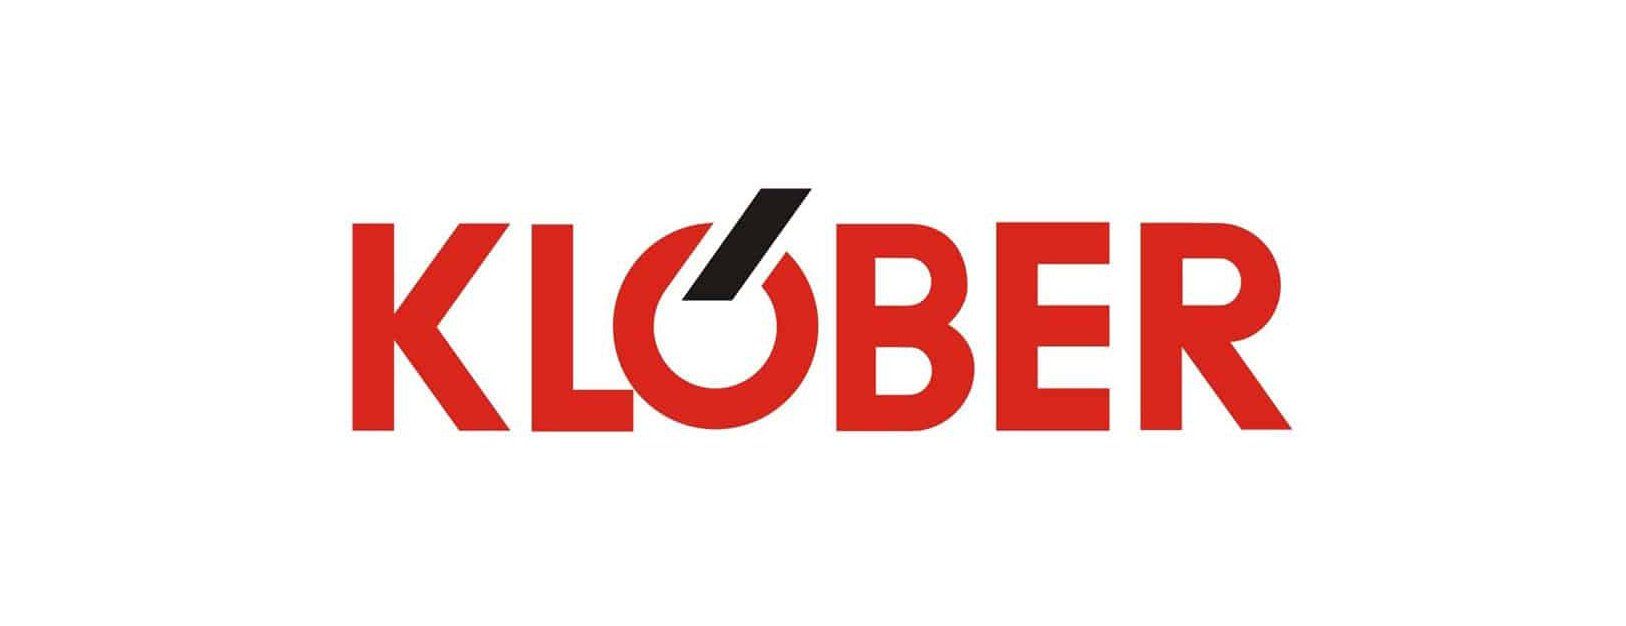 KLOBER  logo